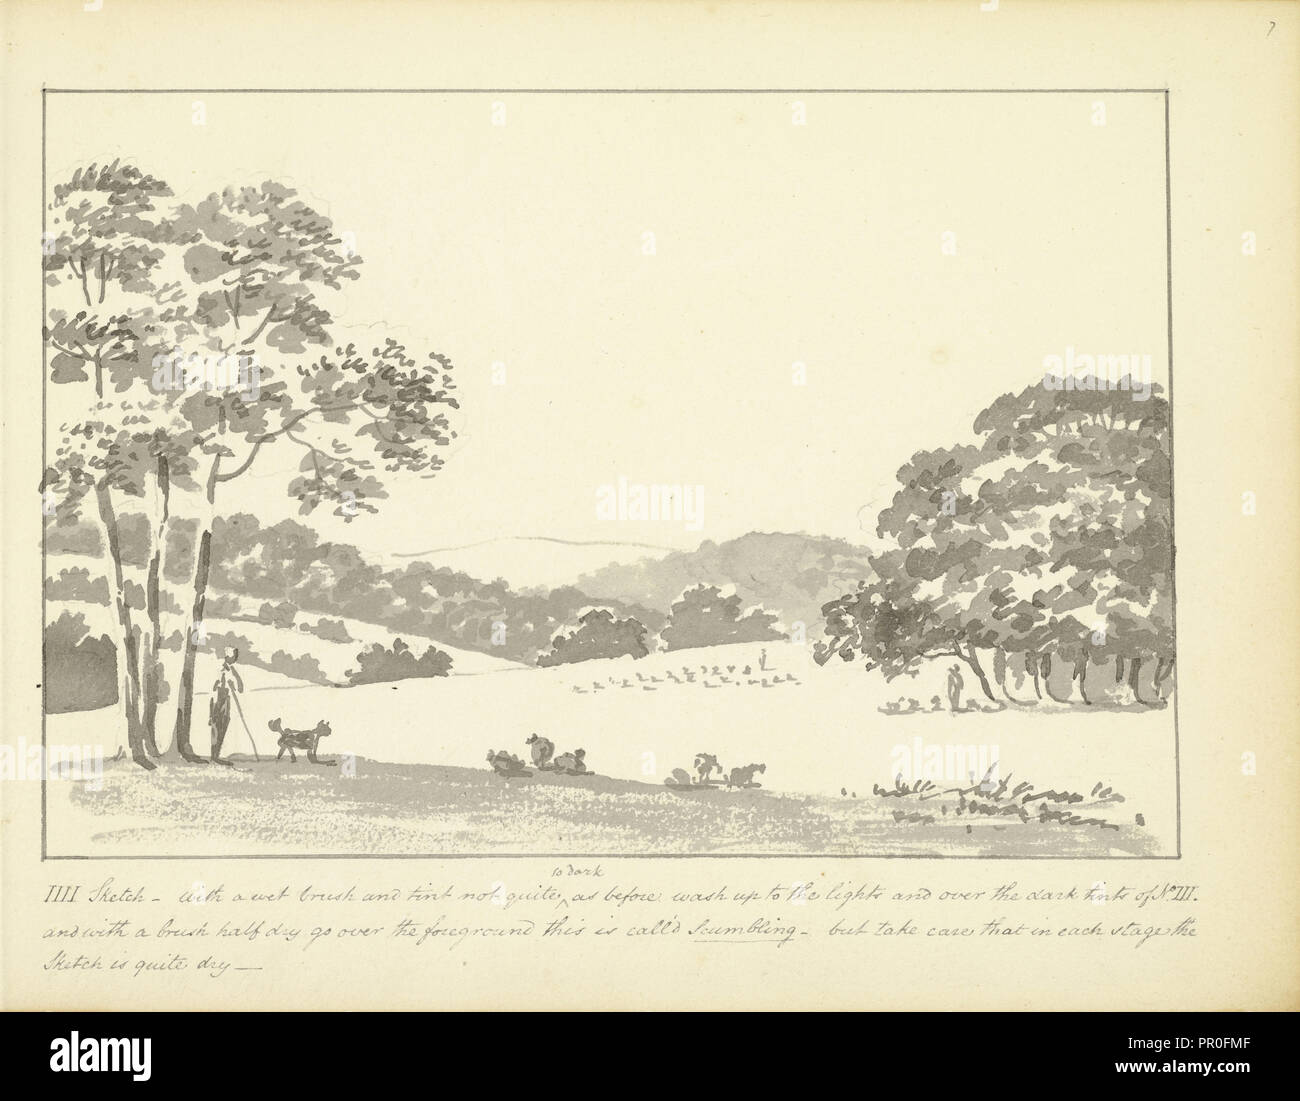 IIII a Sketch - con un pennello leggermente bagnato e tint, alcuni suggerimenti in materia di paesaggio bozzetti, ca. 1810, Humphry Repton architettura Foto Stock